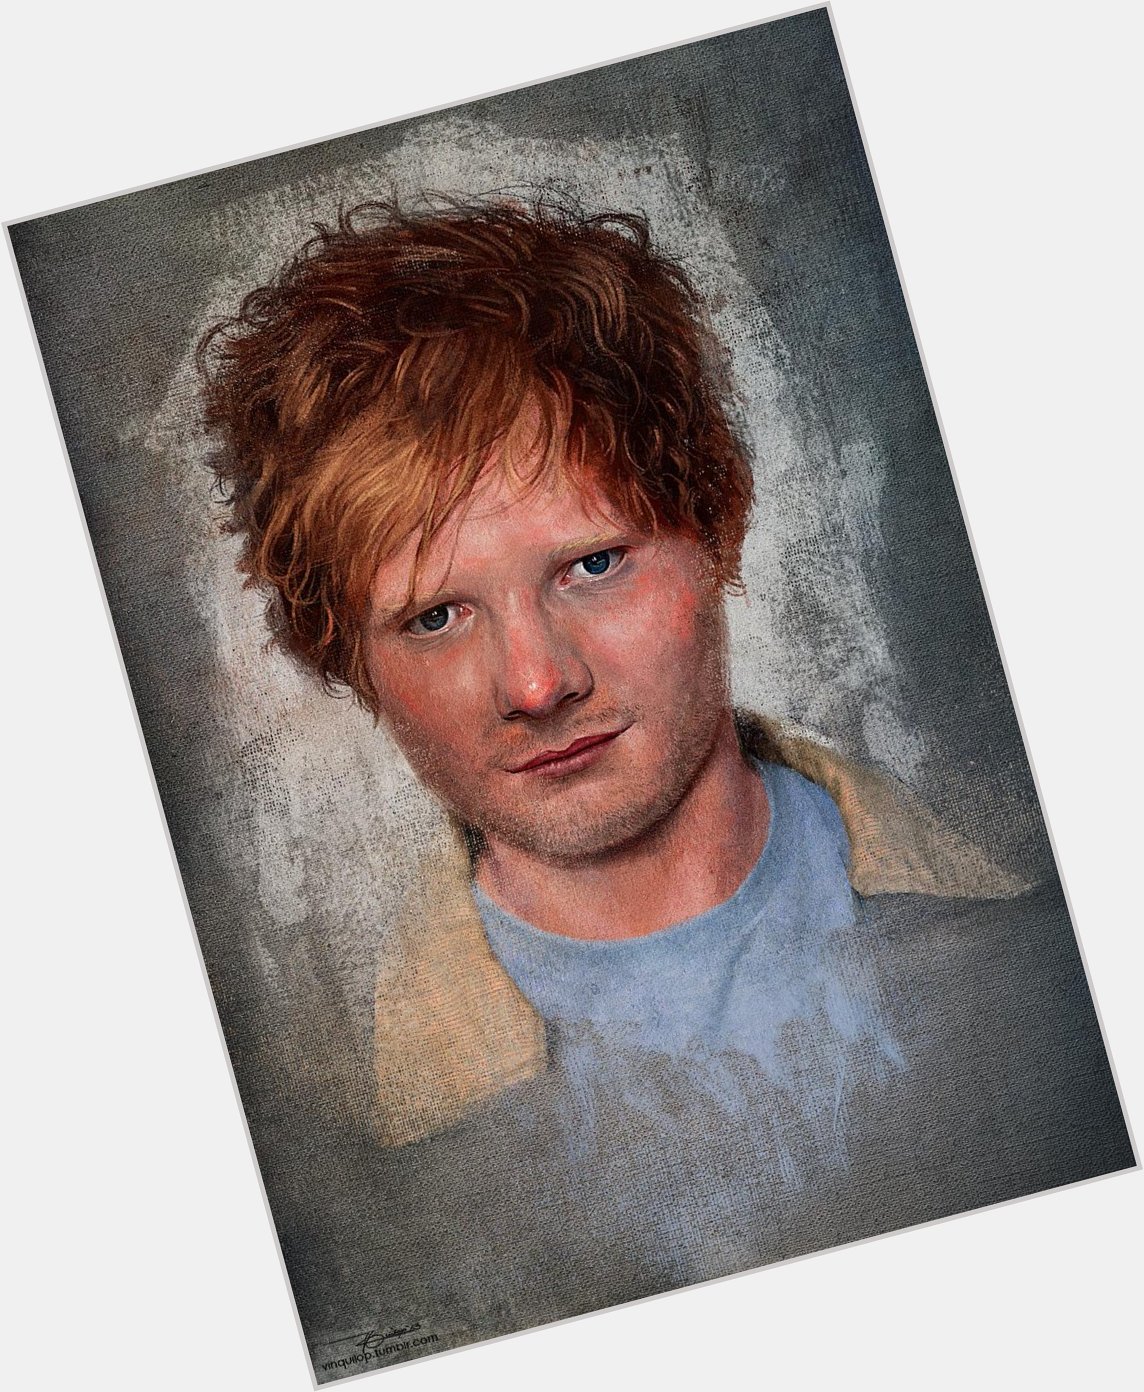 My 2013 painting of Ed Sheeran for his birthday. Happy birthday! National anthem, na namin ung kanta mo. 